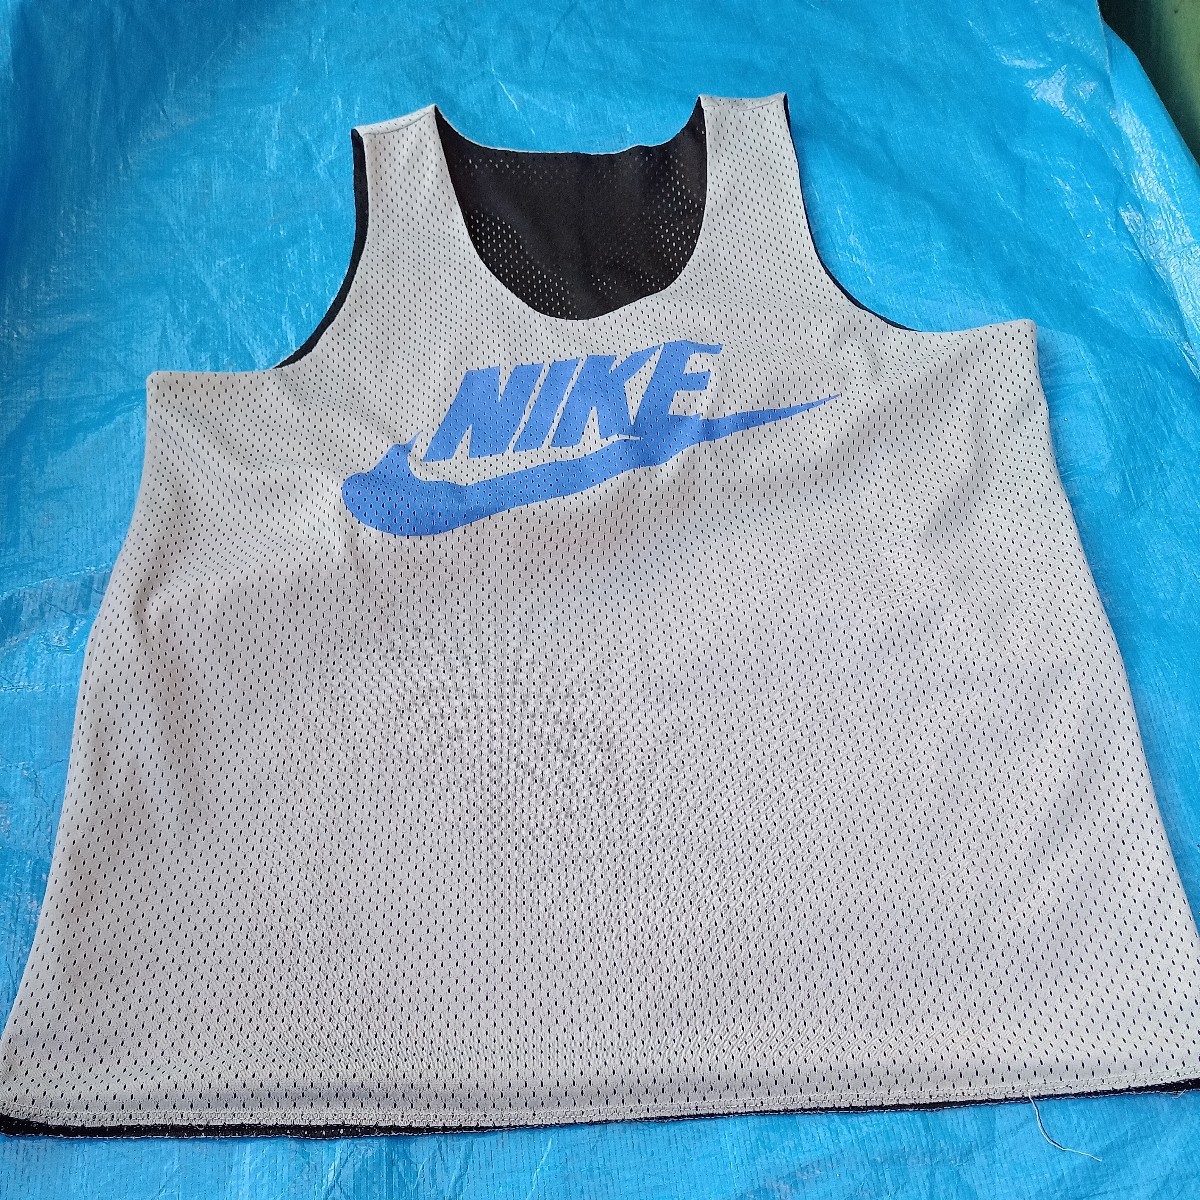  Nike basketball shirt 